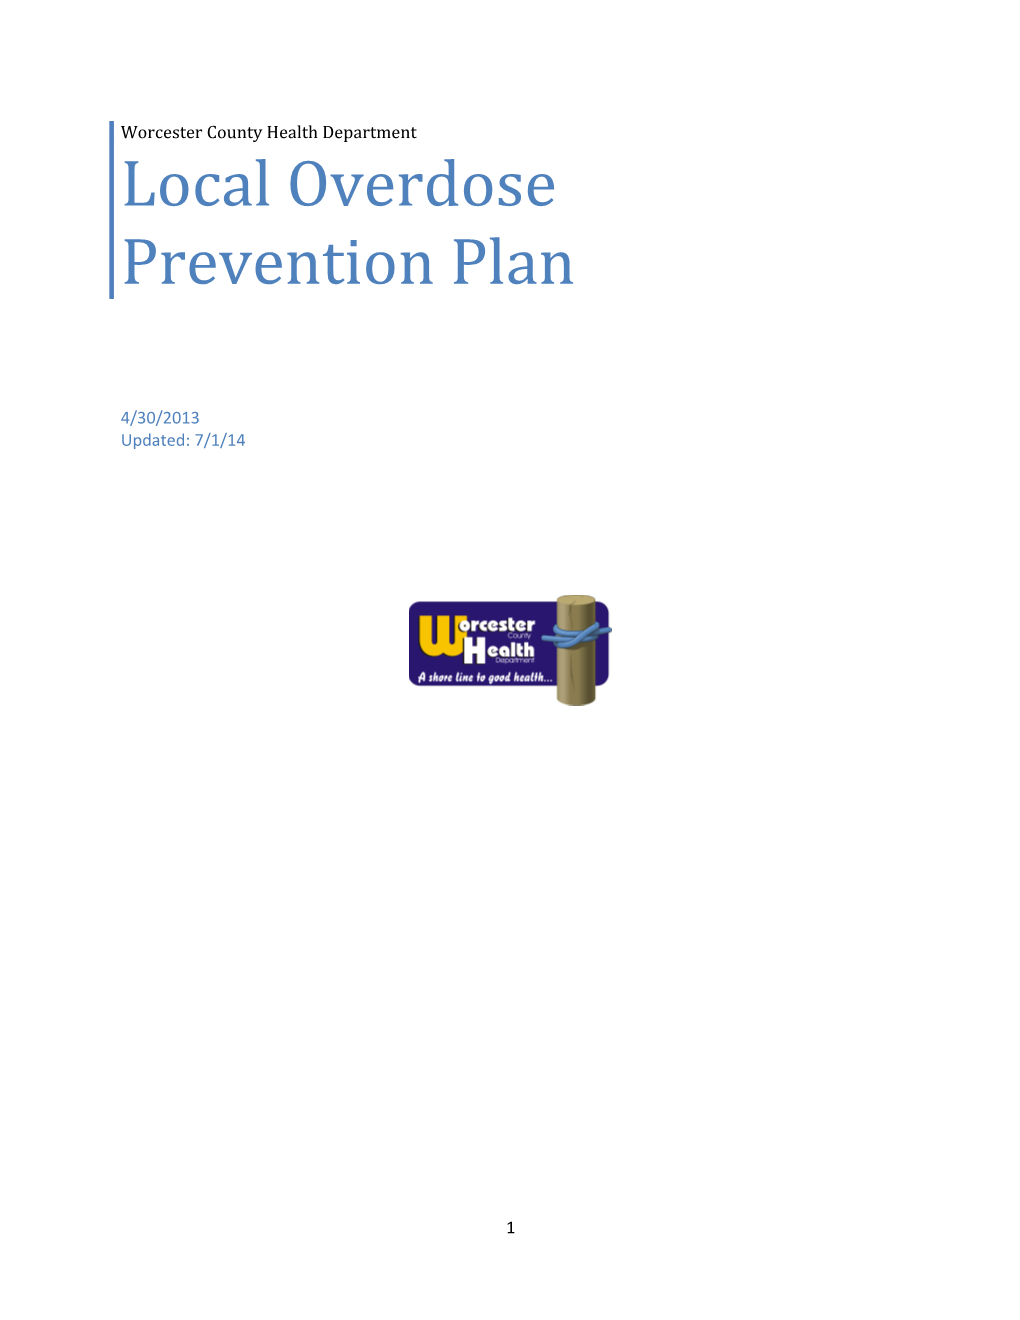 Local Overdose Prevention Plan